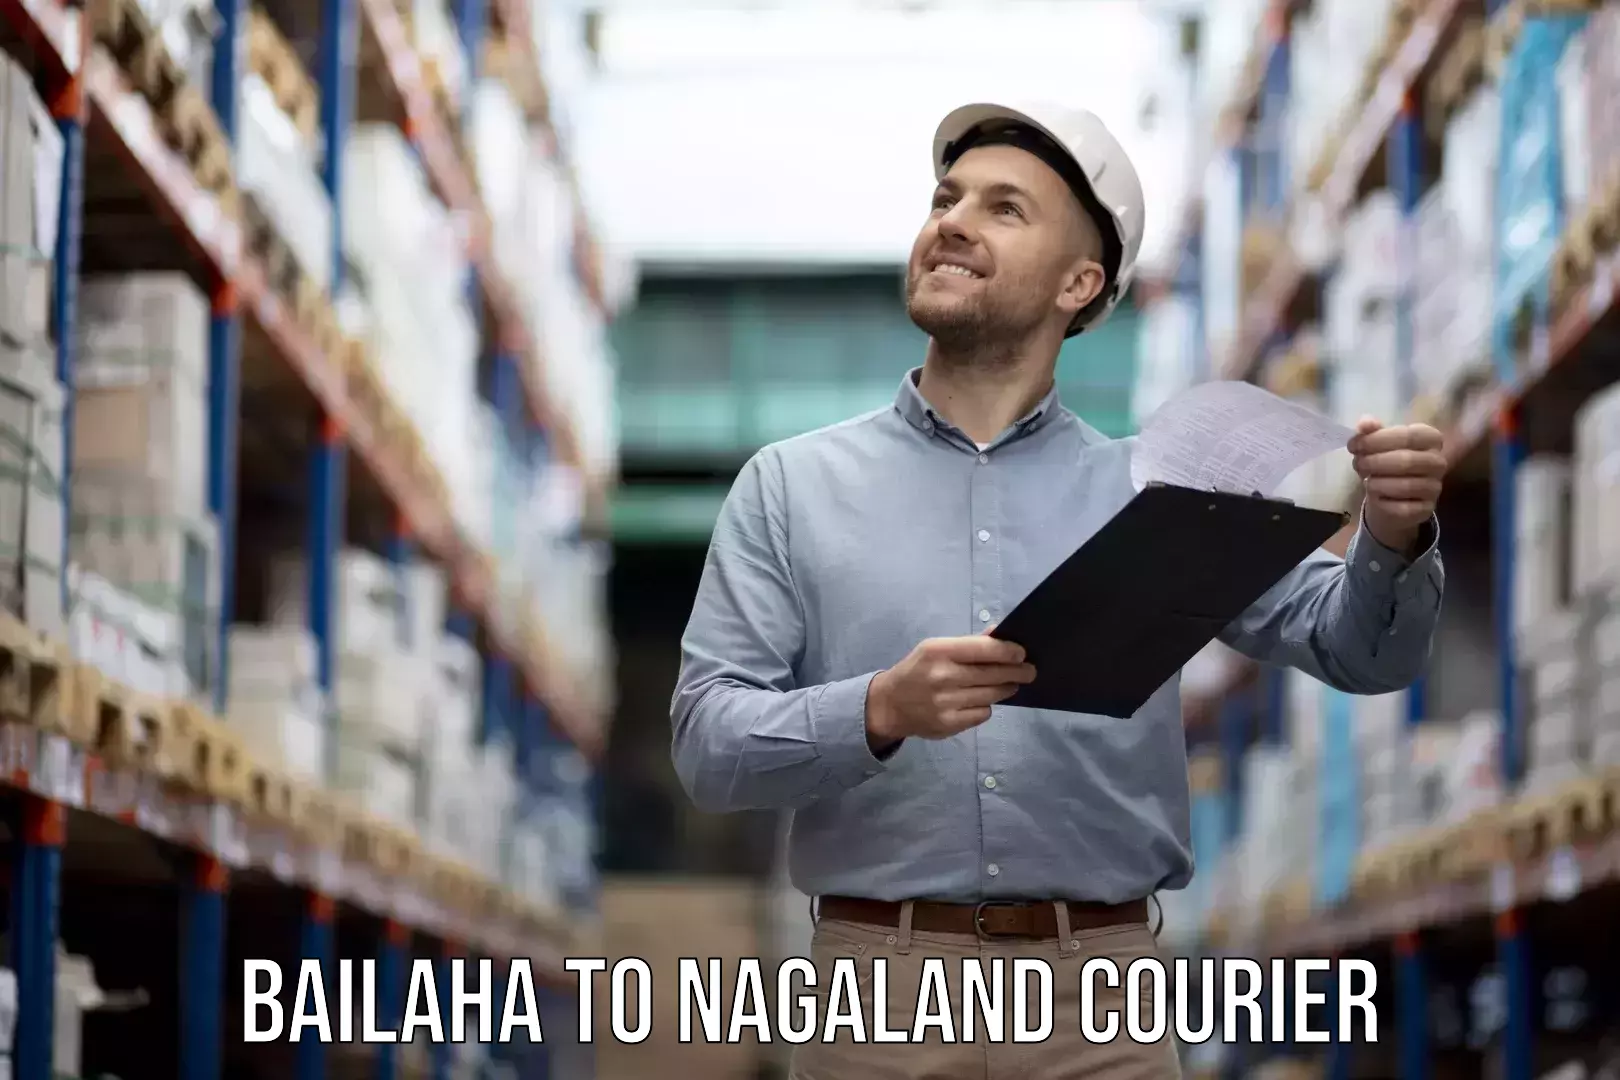 Furniture transport service Bailaha to NIT Nagaland